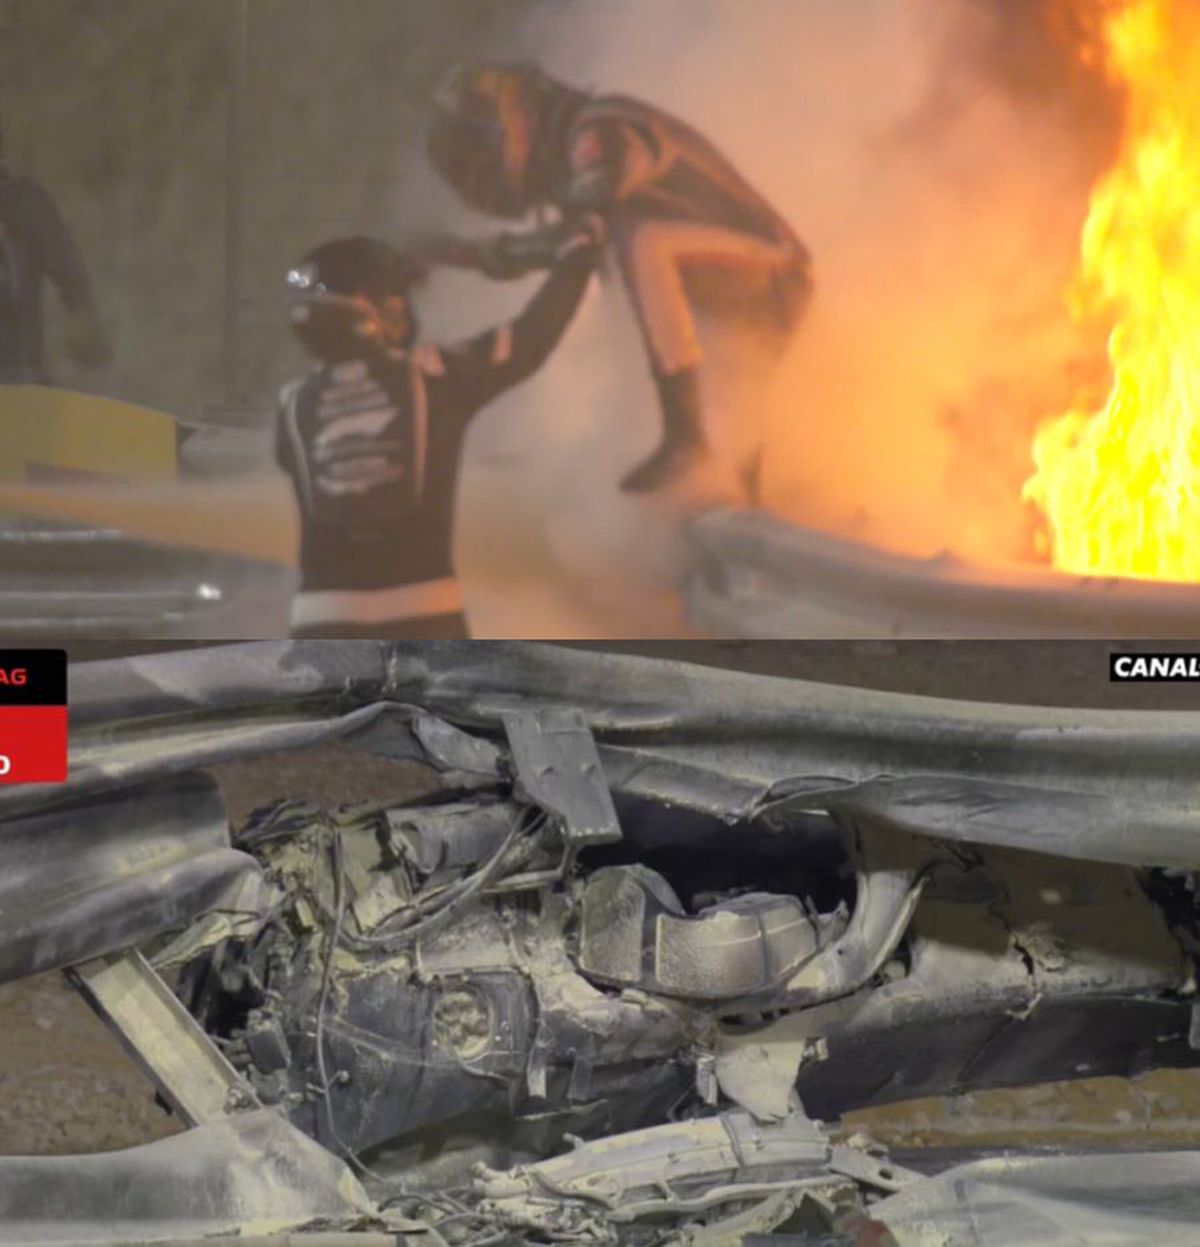 EXCLUSIV Fostul pilot Doru Sechelariu face o reconstituire șocantă a accidentului lui Romain Grosjean: „Putea să-i reteze capul. Unul la un milion scapă cu viață” + amintiri din padoc cu Grosjean